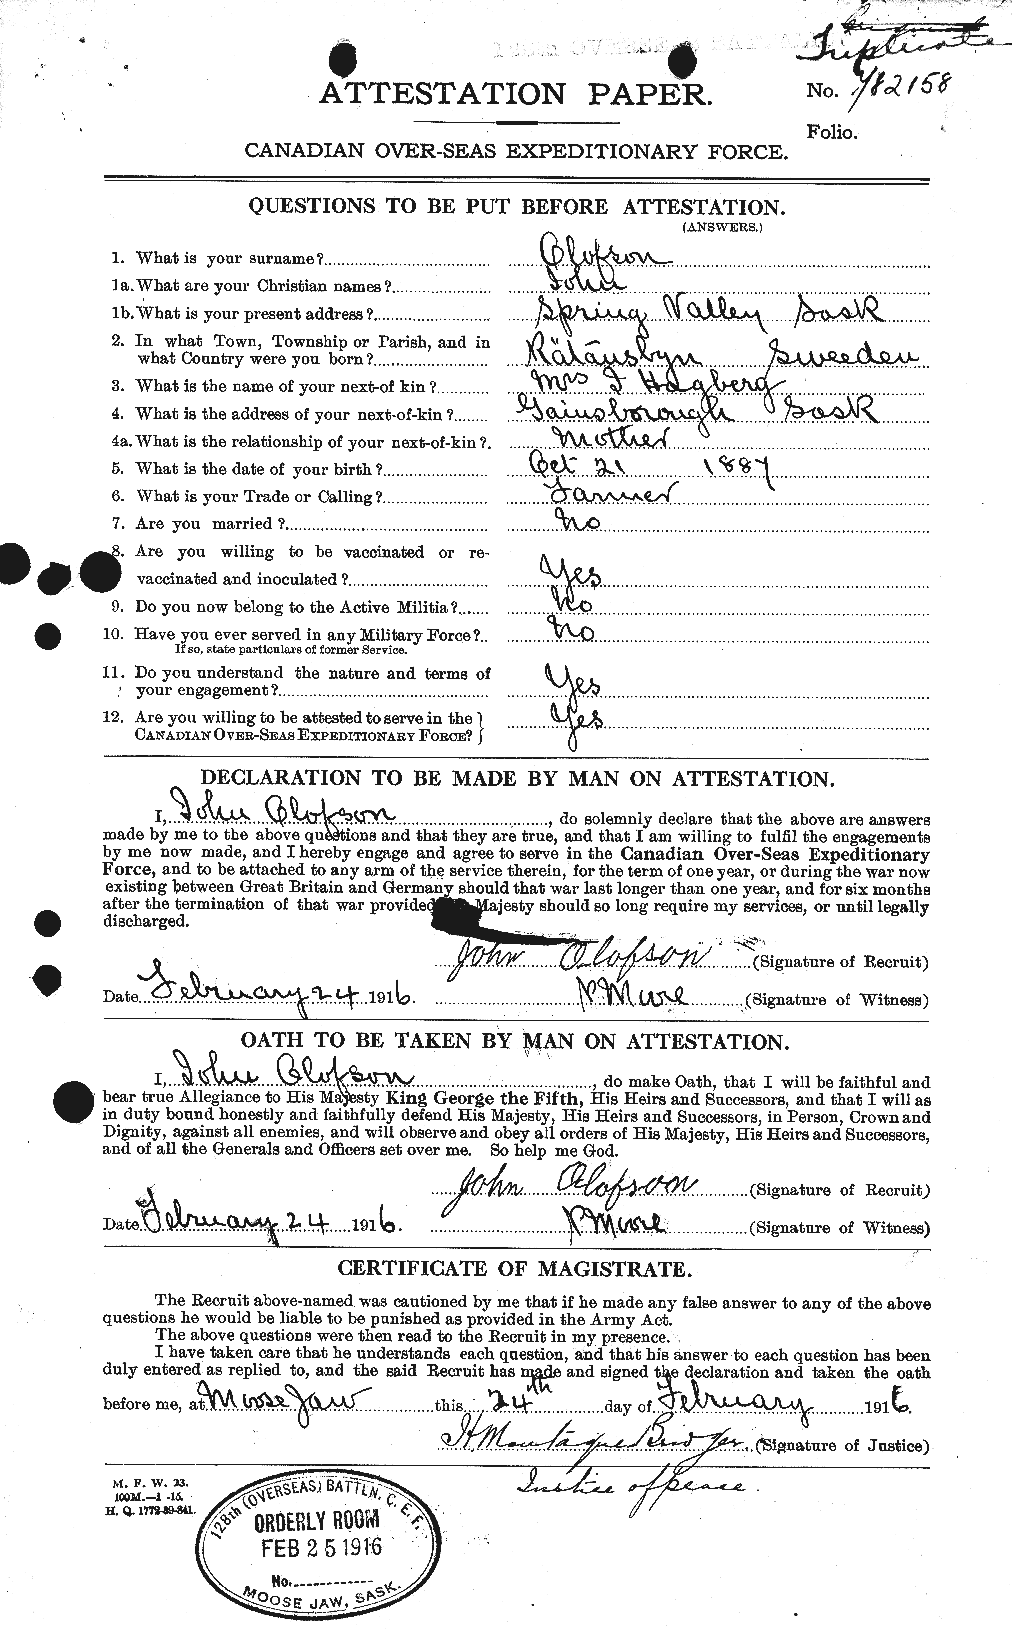 Dossiers du Personnel de la Première Guerre mondiale - CEC 555724a